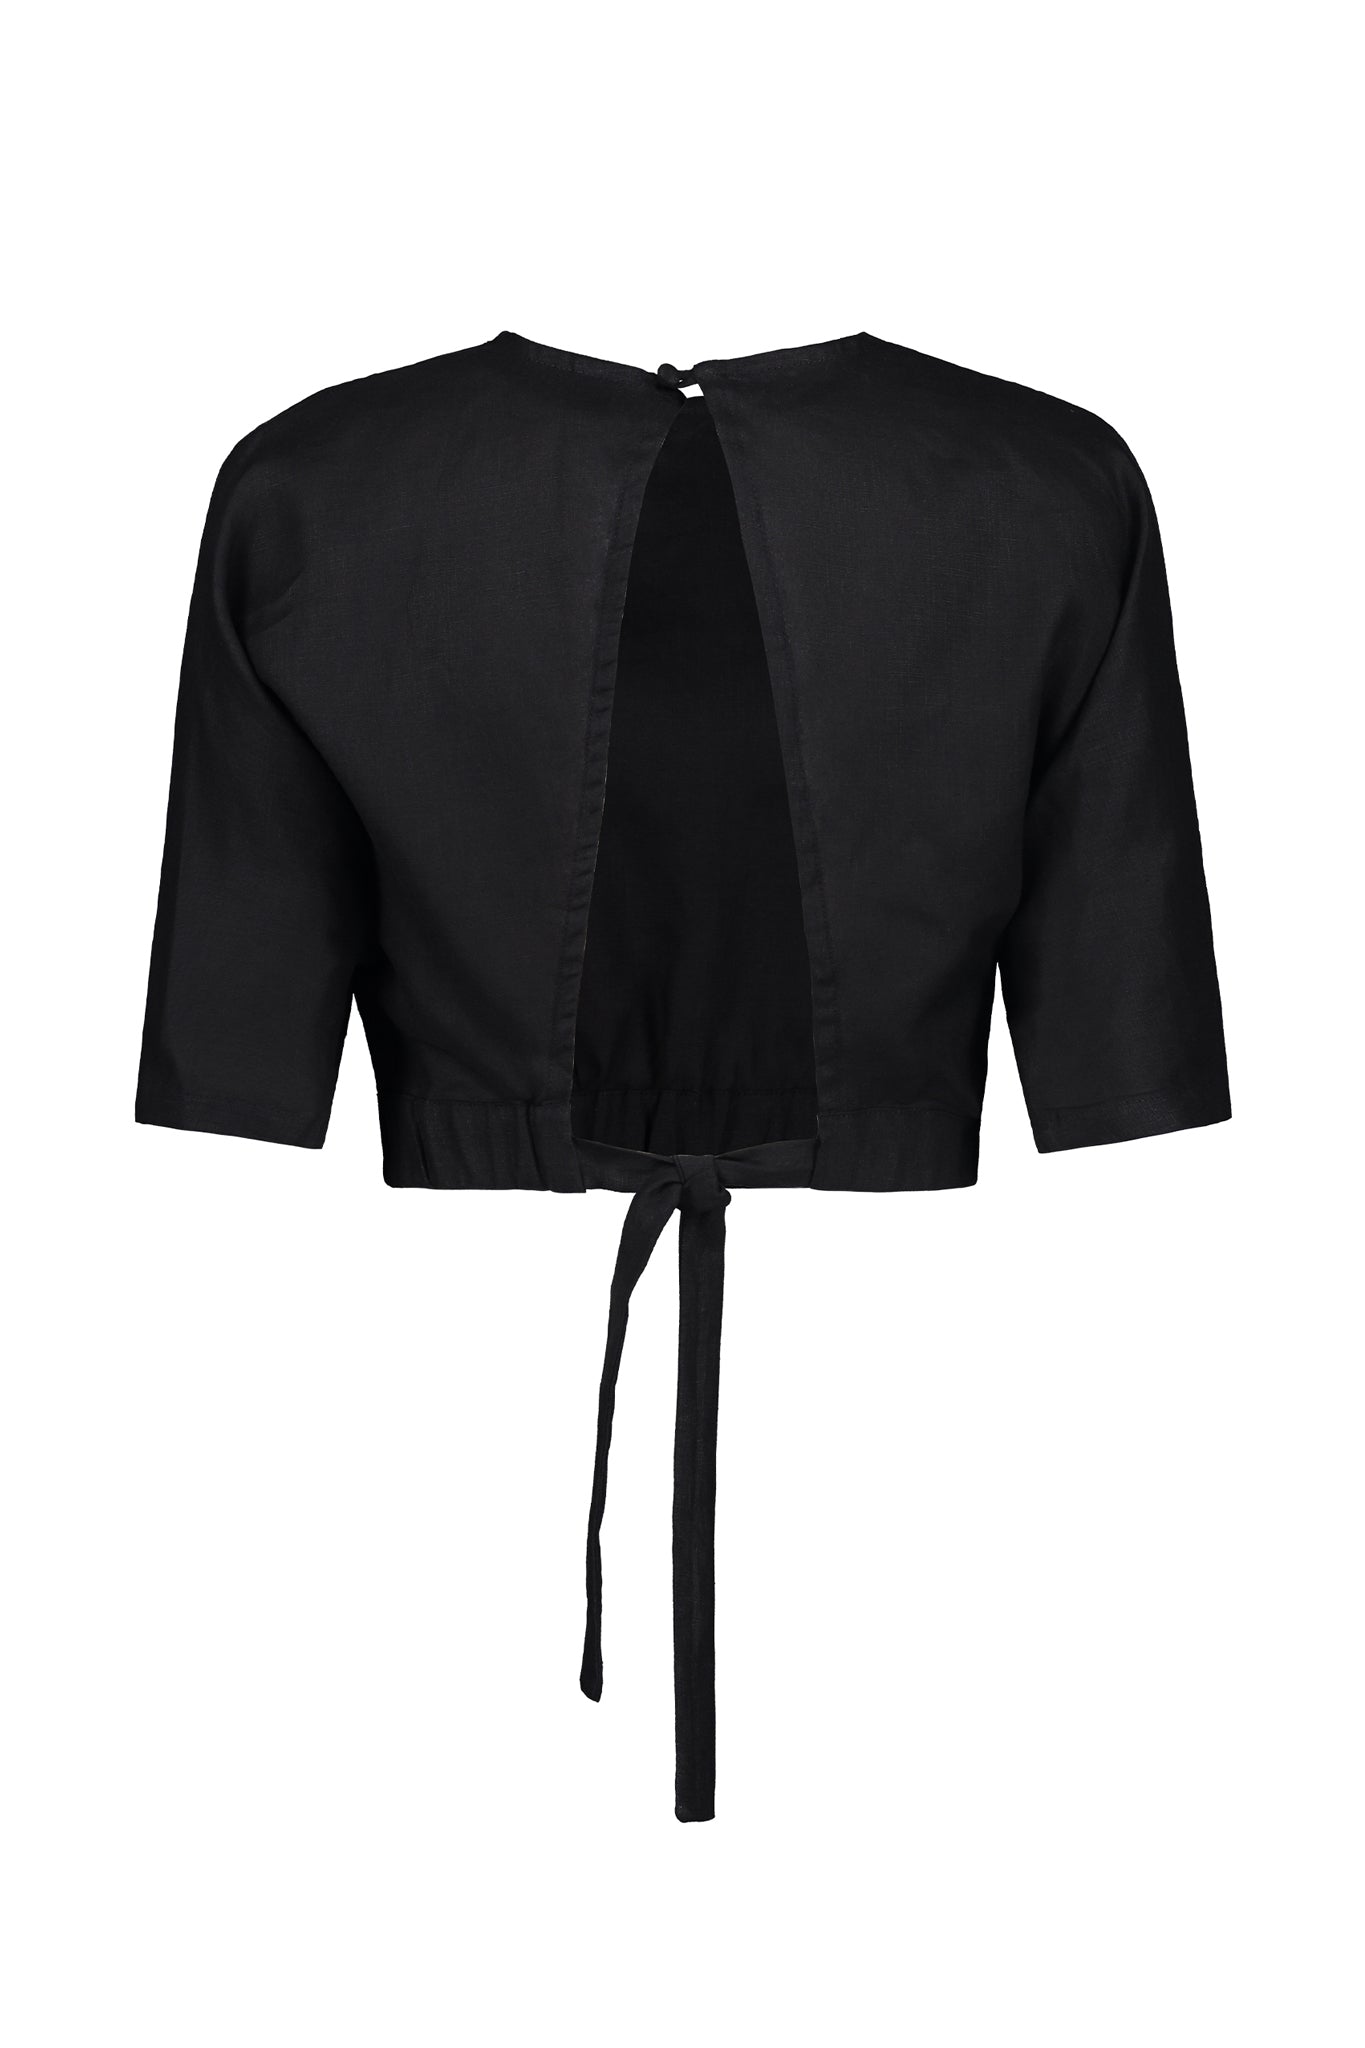 Black Crop Top - Tie-Back Crop Top - Women's Tops - Linen Top - Lulus